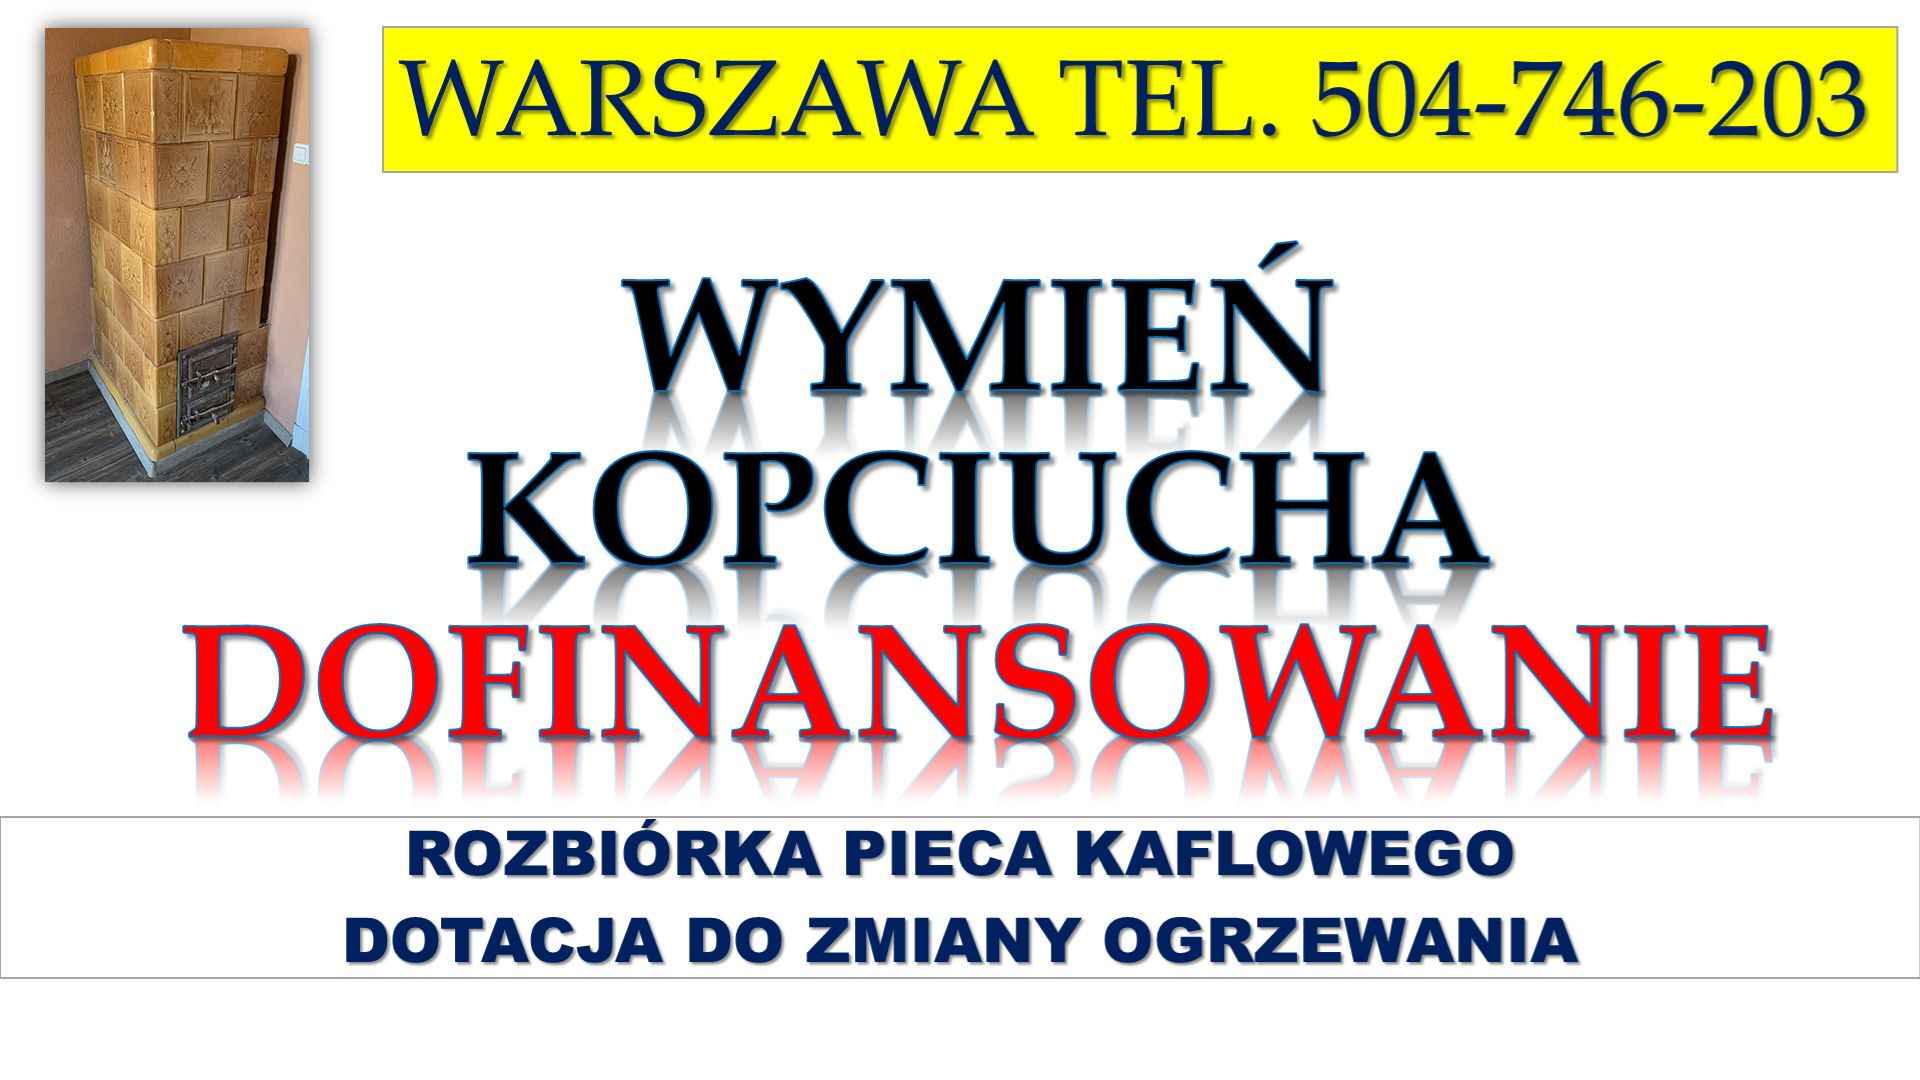 Likwidacja pieca, dotacja, Warszawa, t 504-746-203. Zmiana ogrzewania. Psie Pole - zdjęcie 2